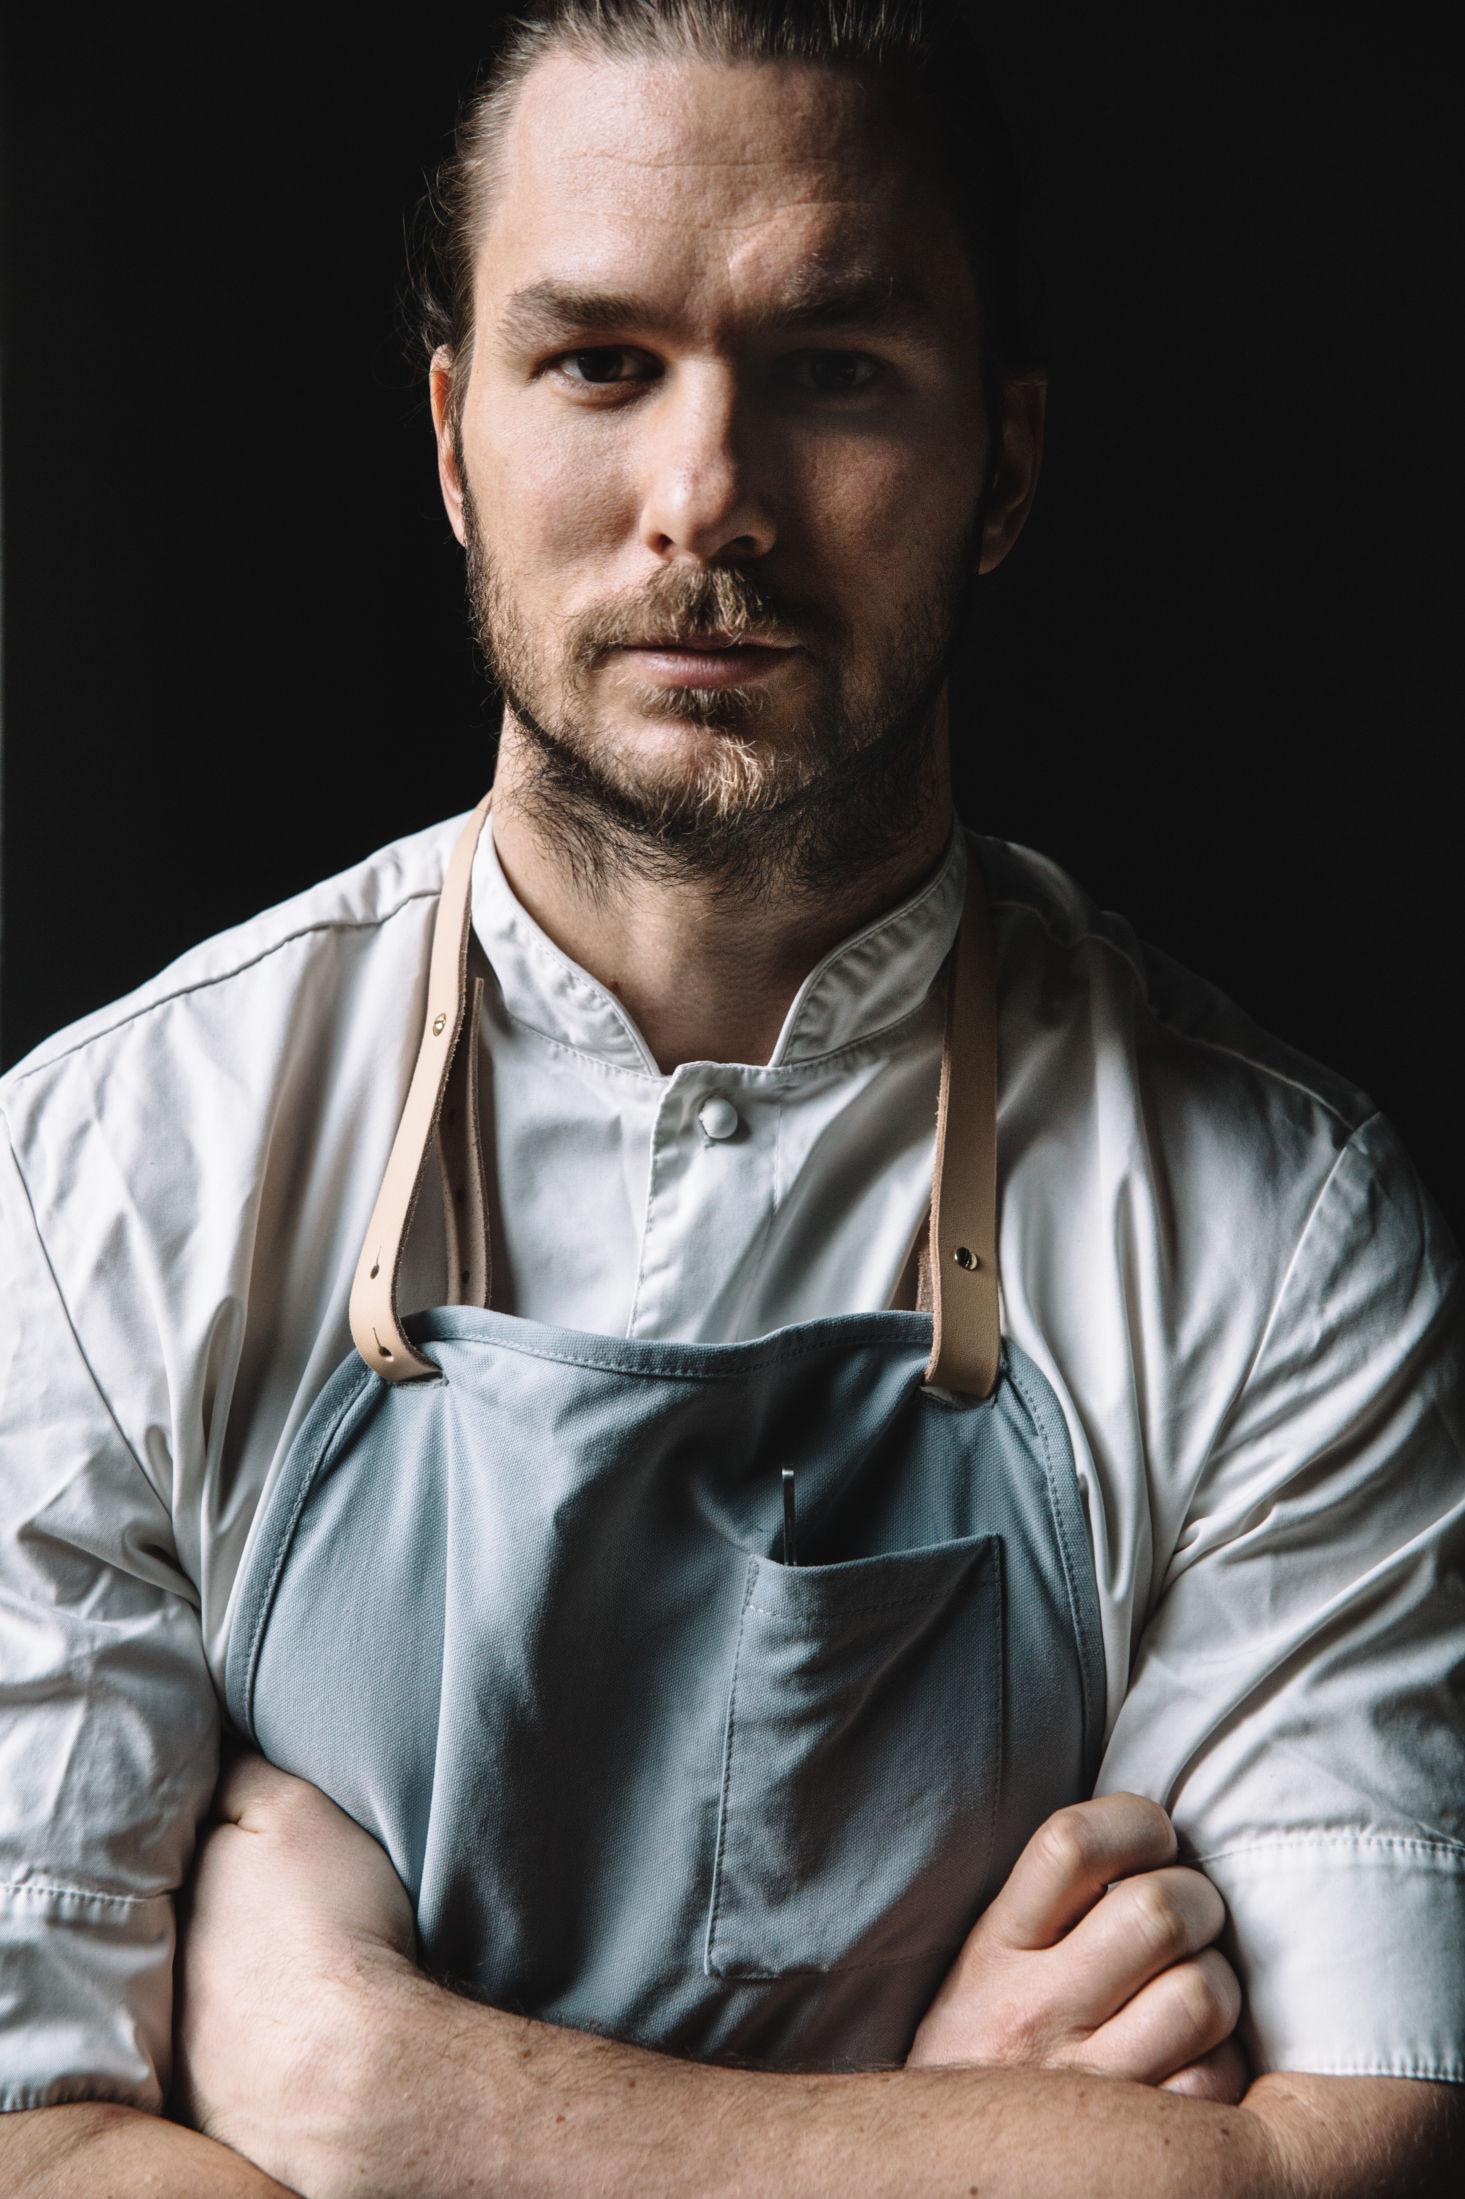 TOPPKOKK: Mikael Svensson er kjøkkensjef ved Restaurant Kontrast, og er blant dem som serverer Mangalitsagris. Foto: Gitte Paulsbo